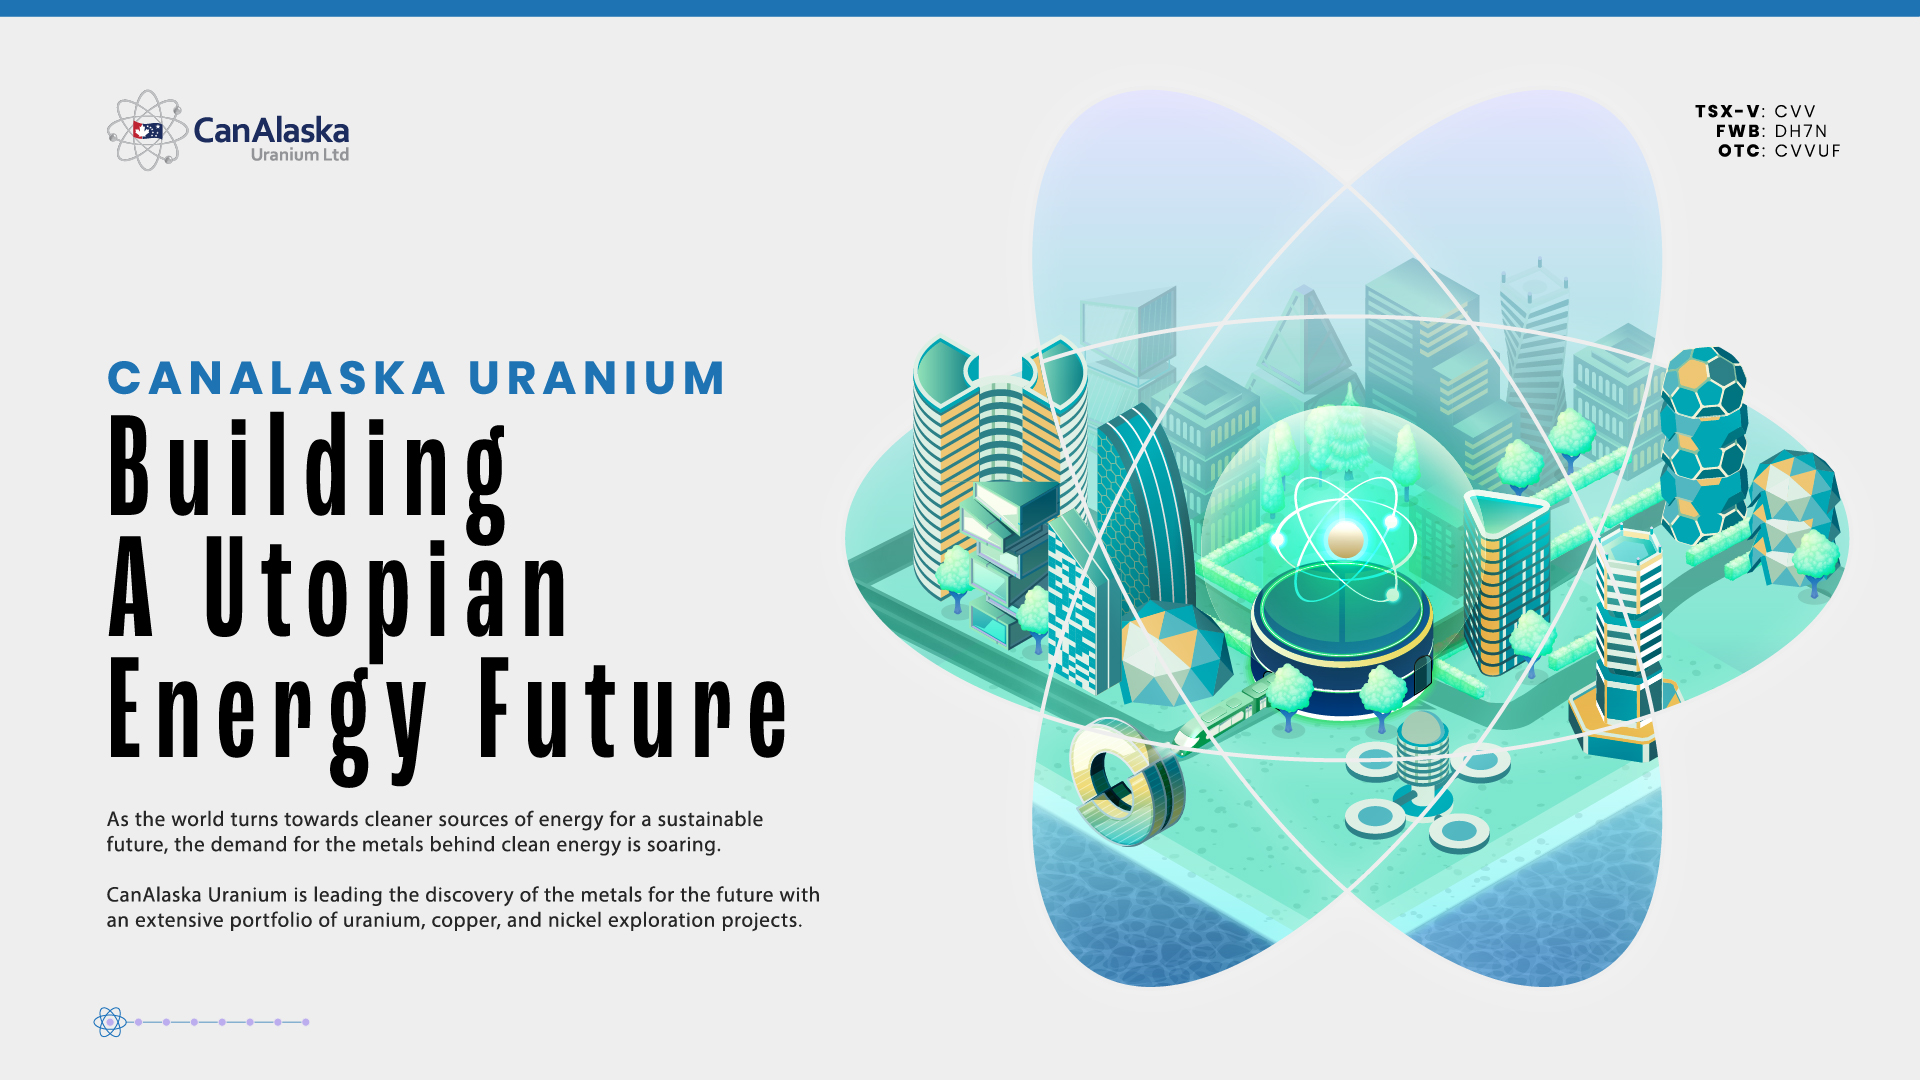 Introduction to CanAlaska Uranium